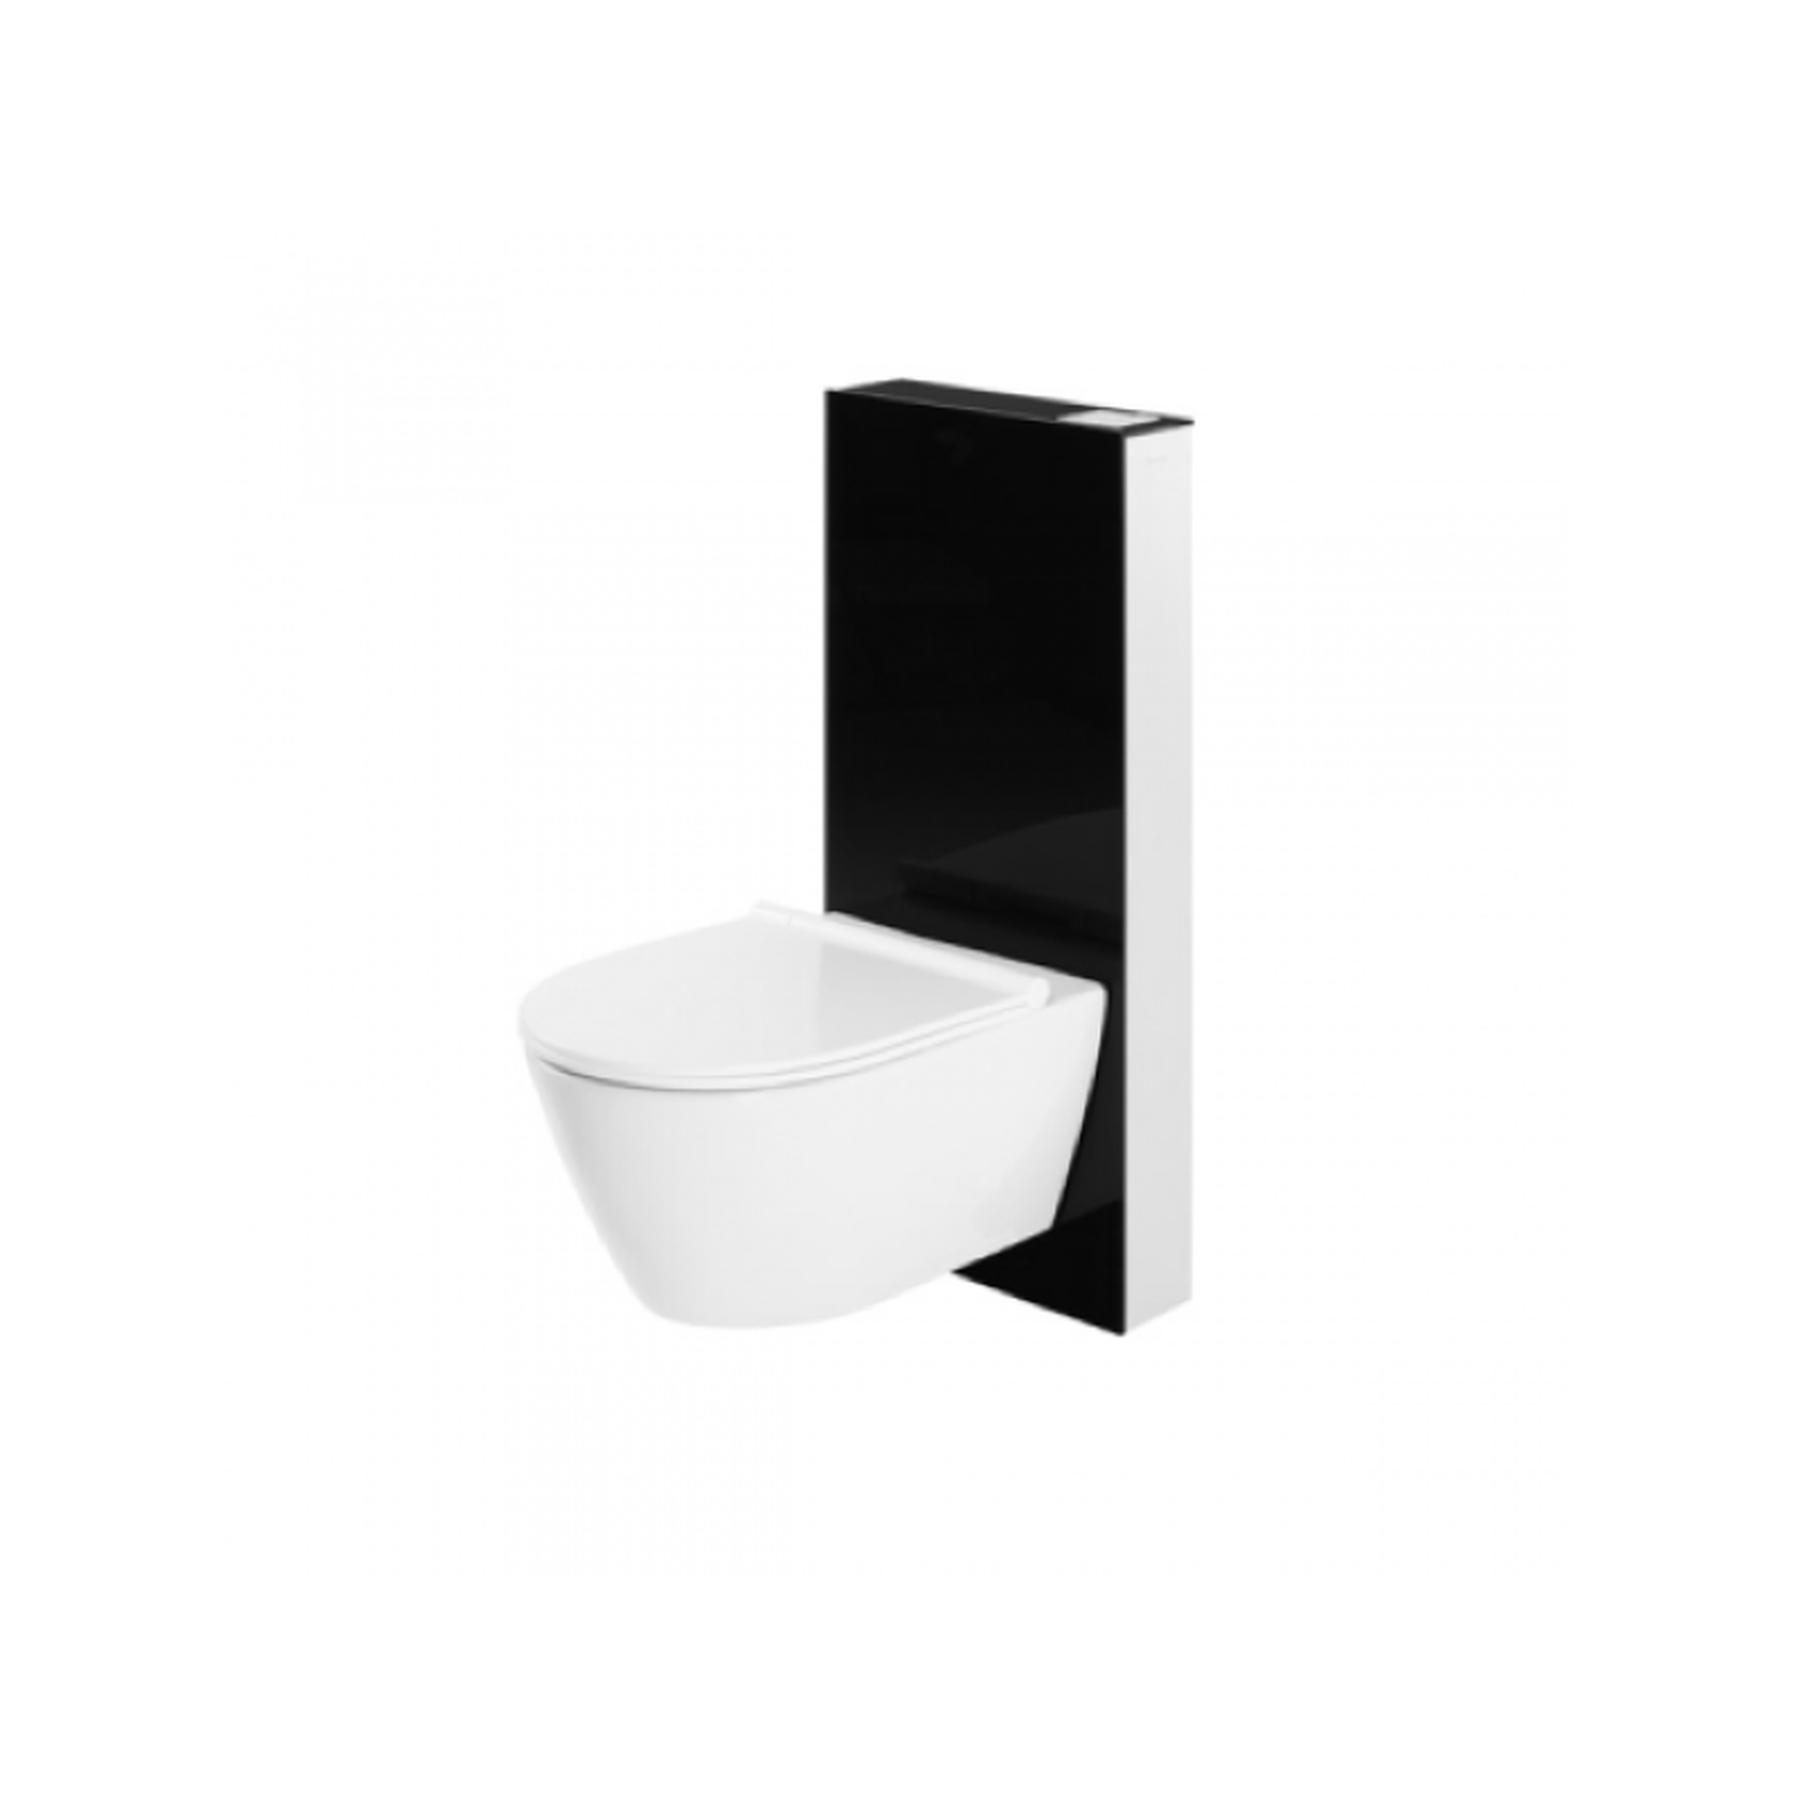 Panneau acrylique SANGLASS WALL avec réservoir 3/6 pour Cuvette de WC suspendue couleur noir/chrome   